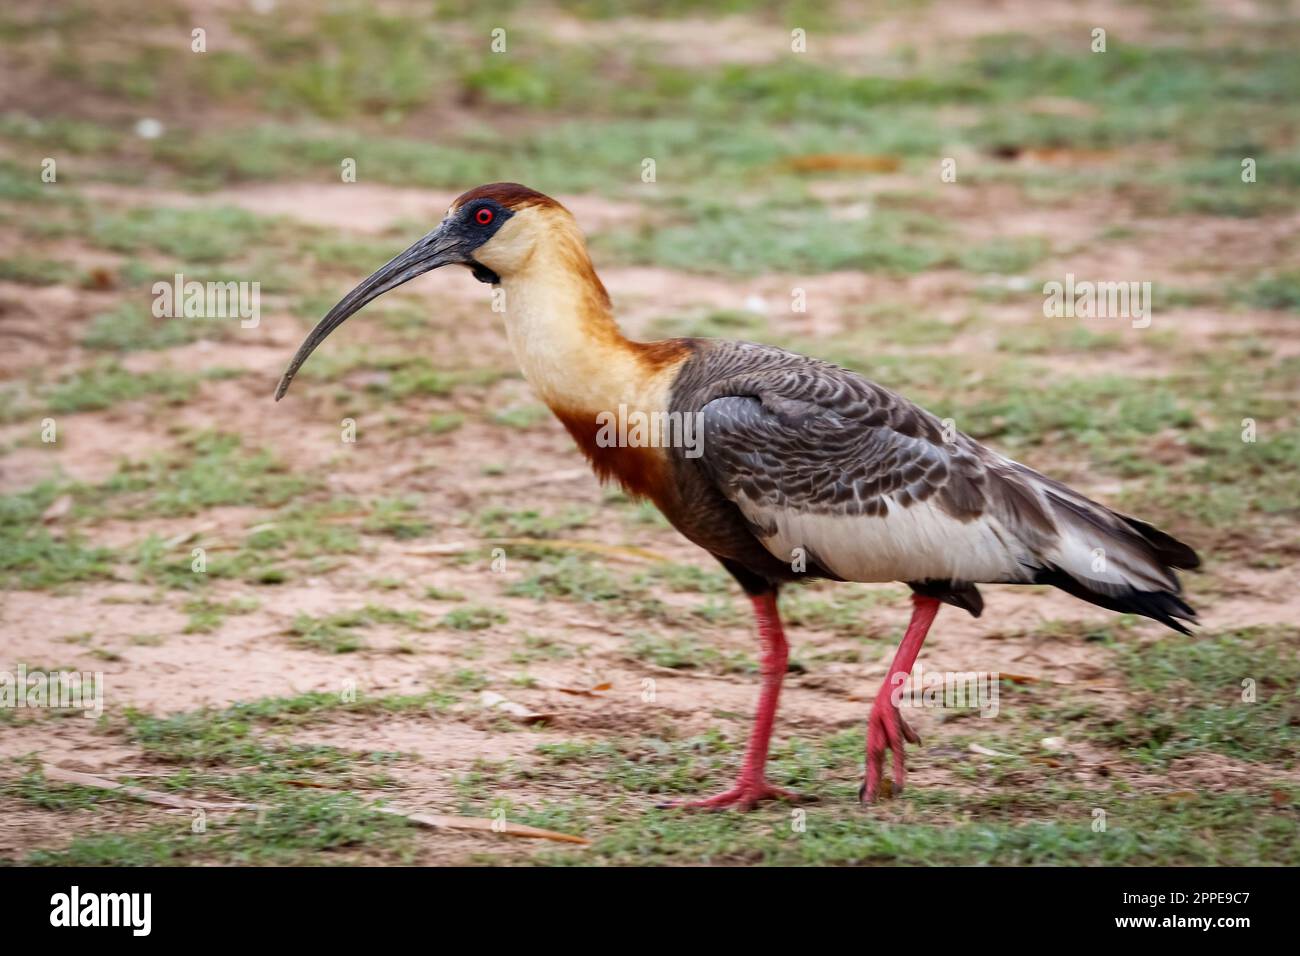 Seitenansicht eines Ibis Walking on the Ground, Pantanal Wetlands, Mato Grosso, Brasilien Stockfoto